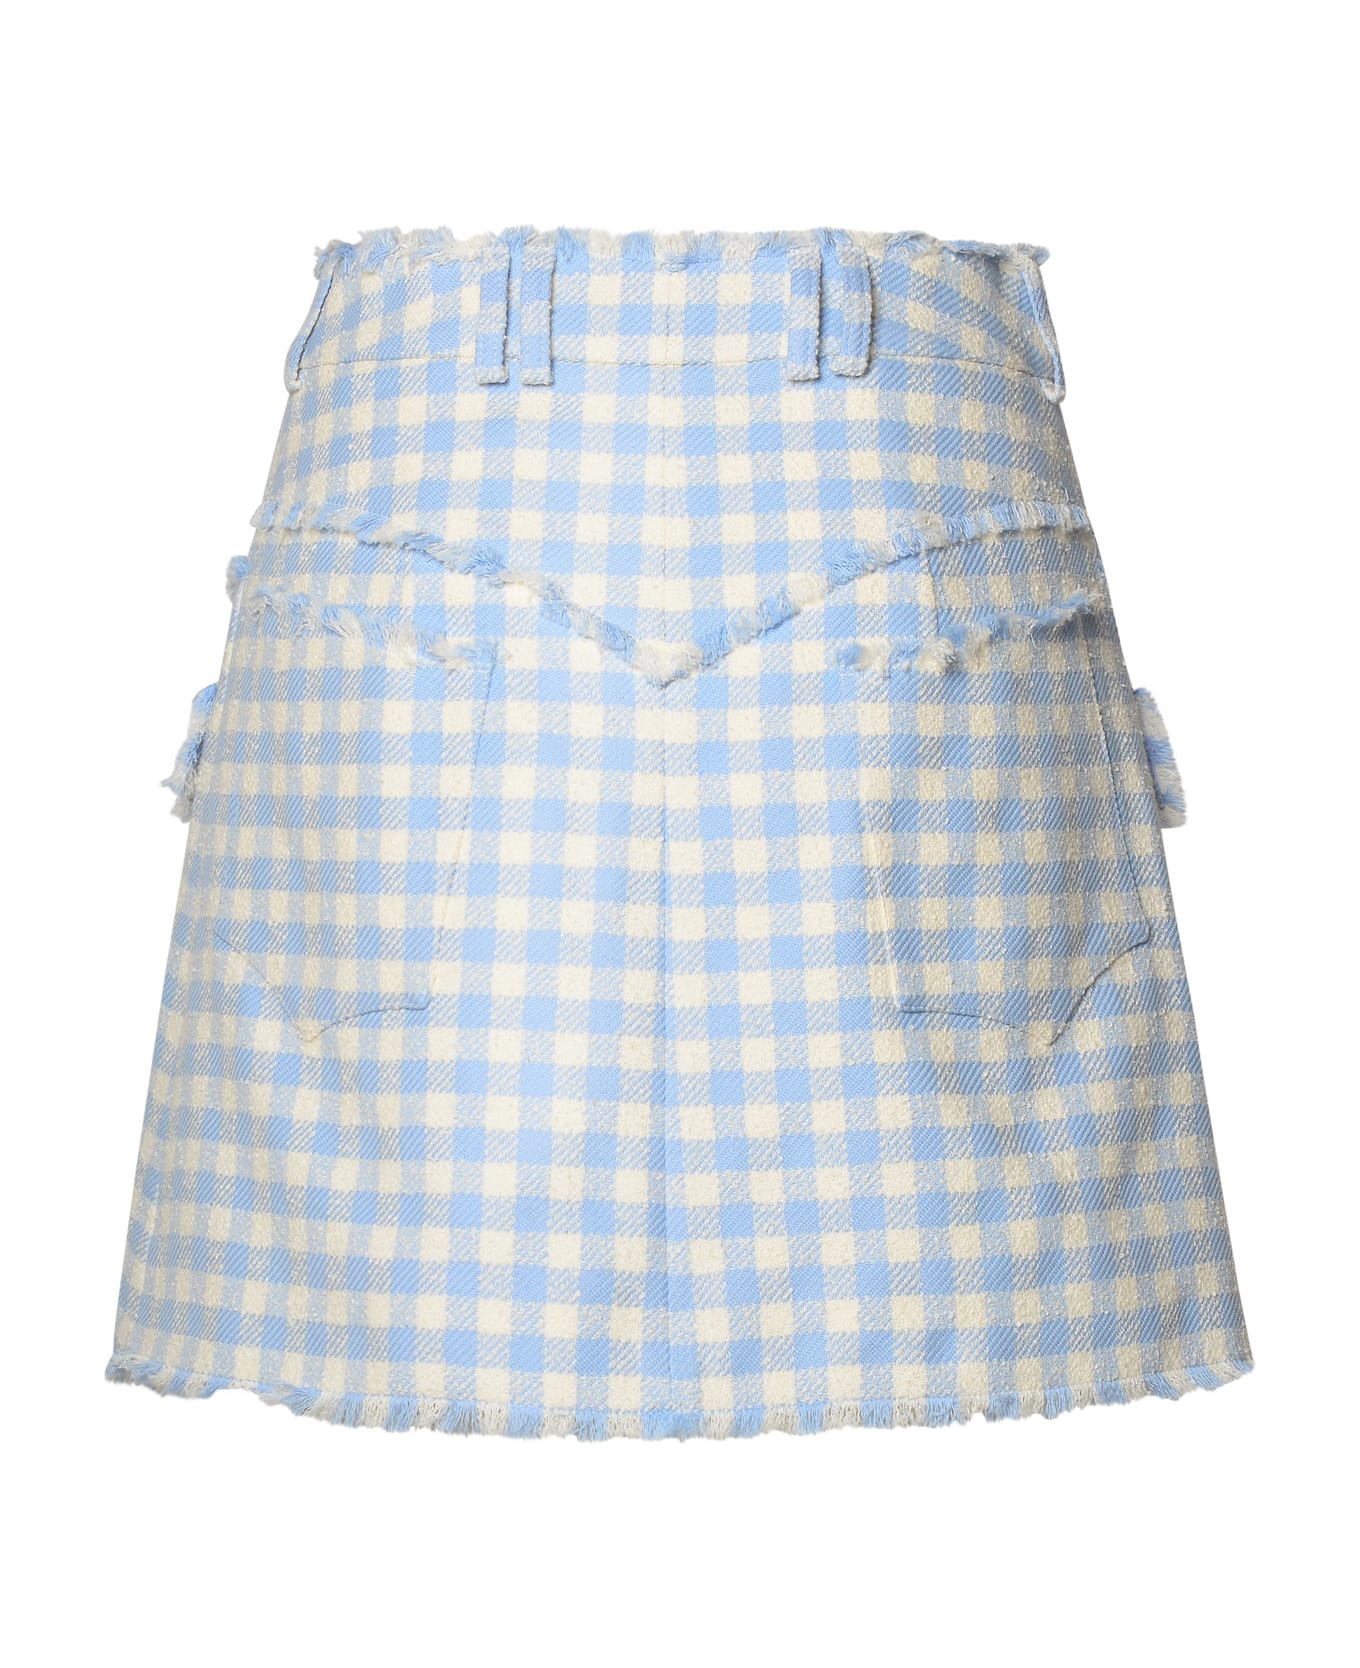 Balmain Two-tone Cotton Skirt - Bleu pale/blanc スカート